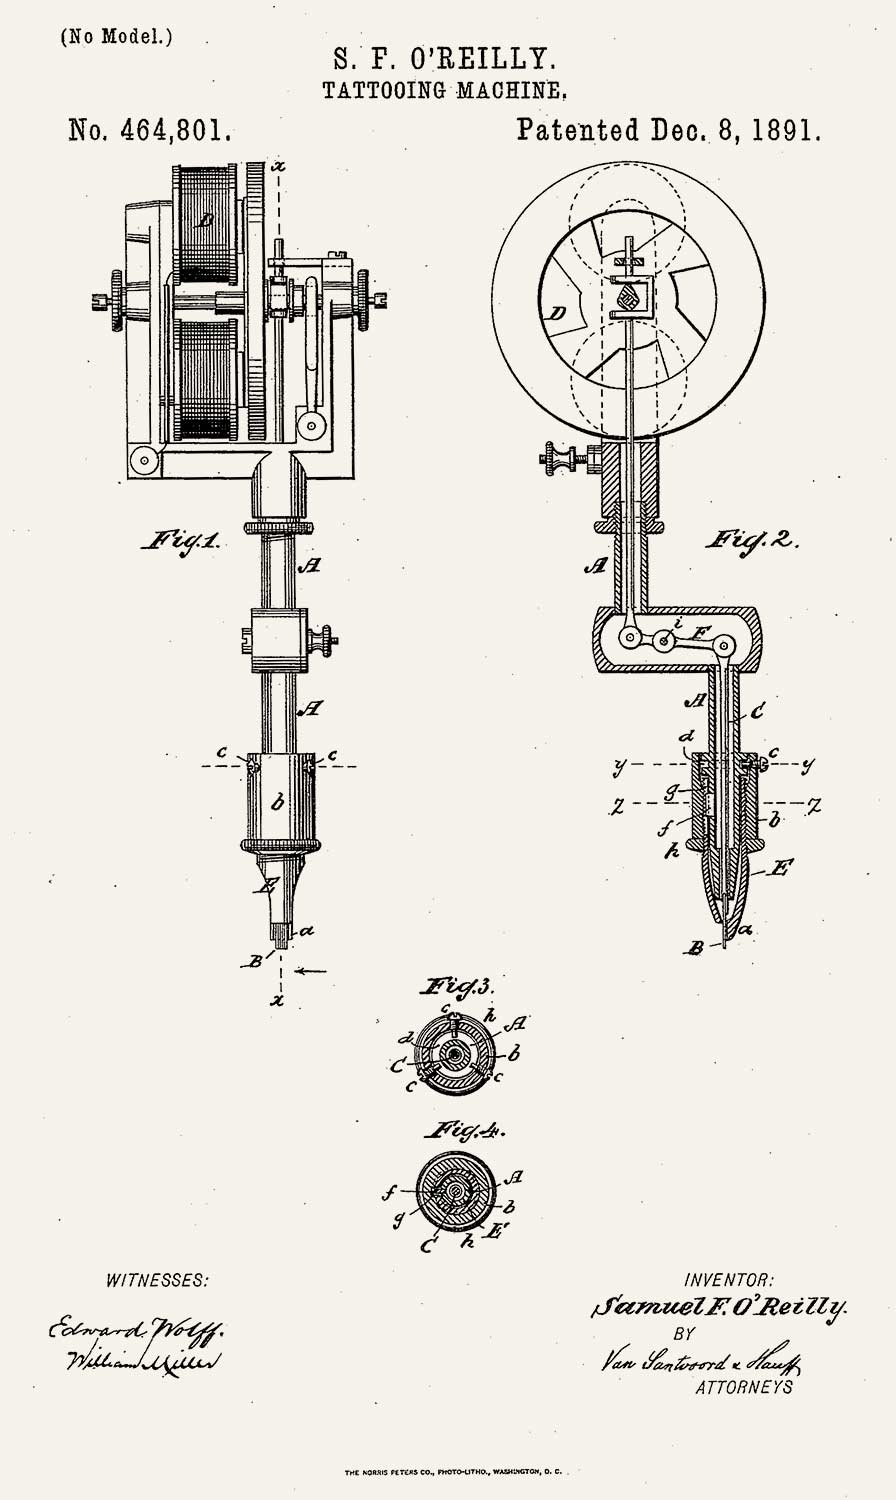 O’Reilly’s Patent seiner ersten Tattoo-Maschine, U.S. Patent 464,801, angemeldet 16. Juli 1891, and ausgestellt 8- Dezember 1891